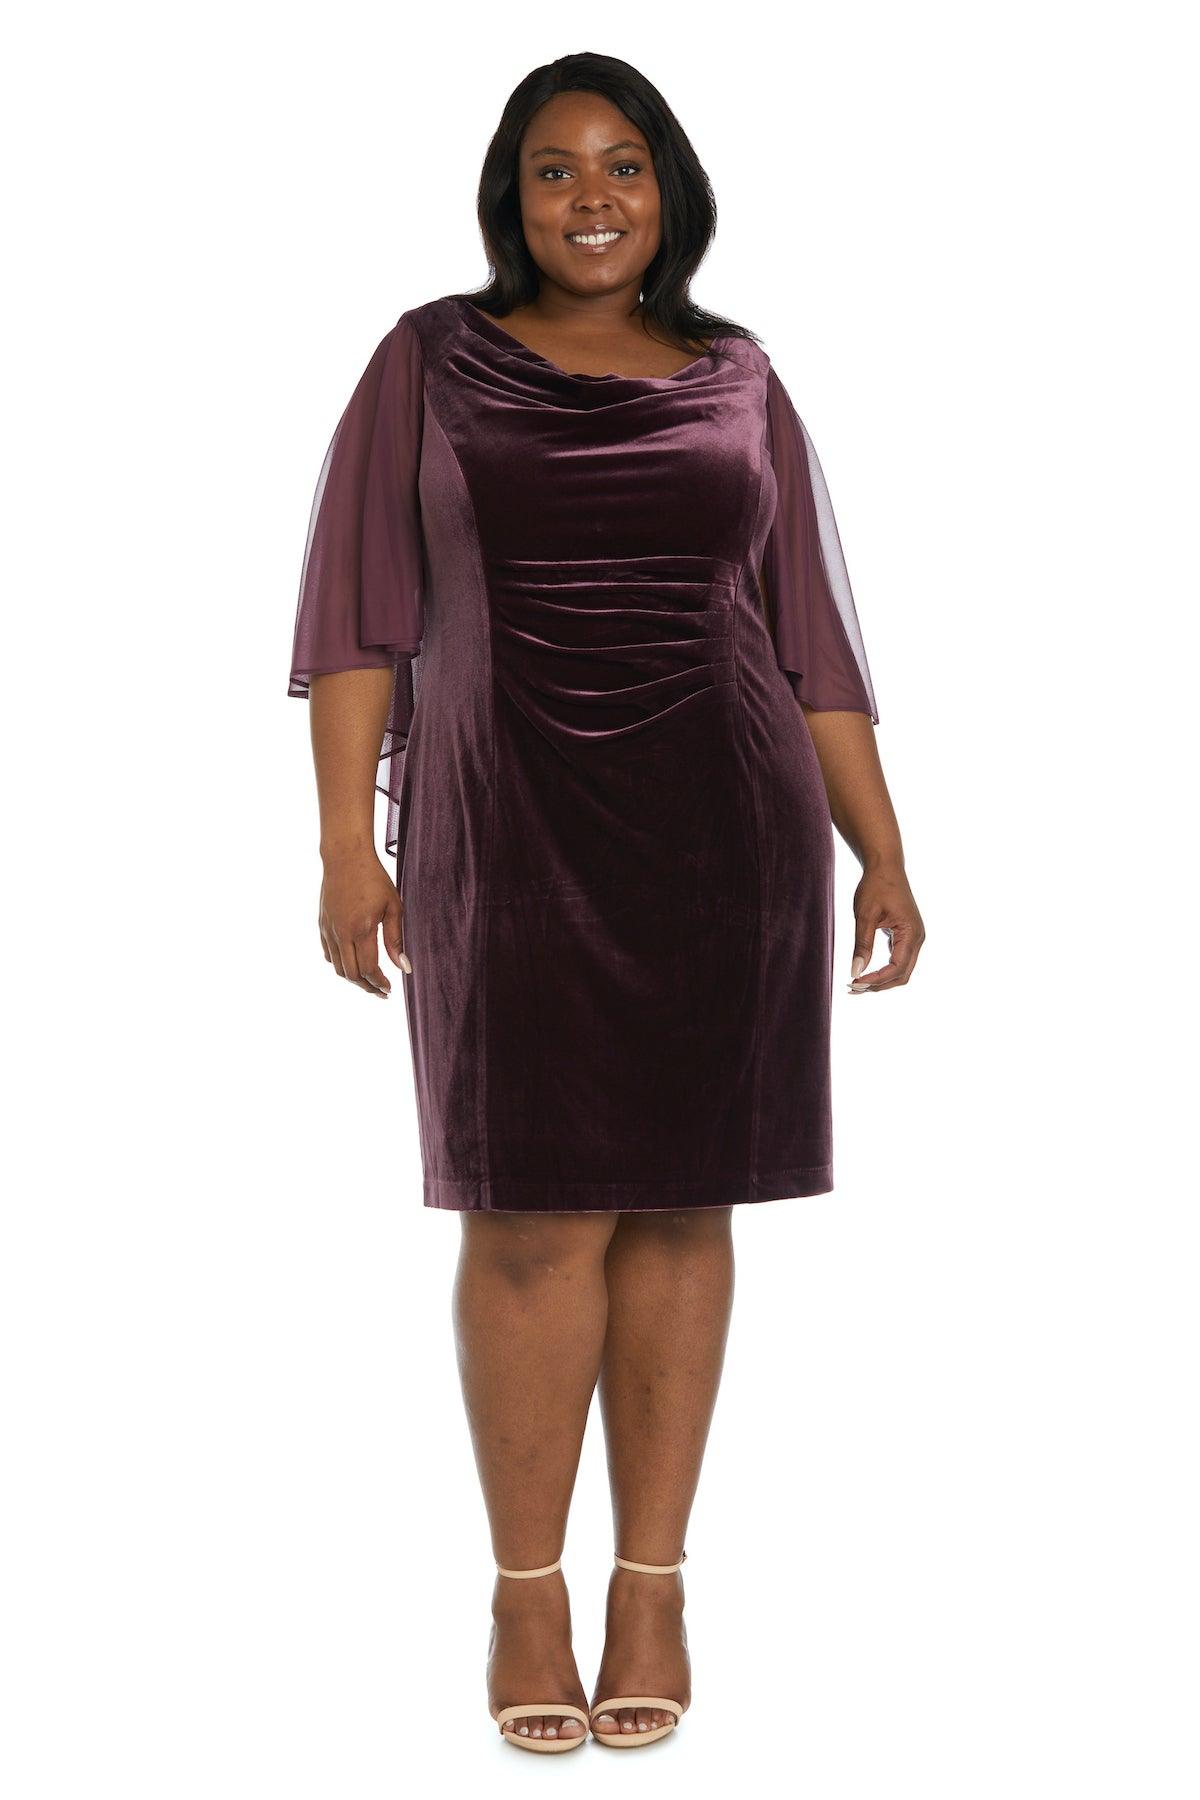 R&M Richards Plus Size Short Cocktail Dress 7457W - The Dress Outlet